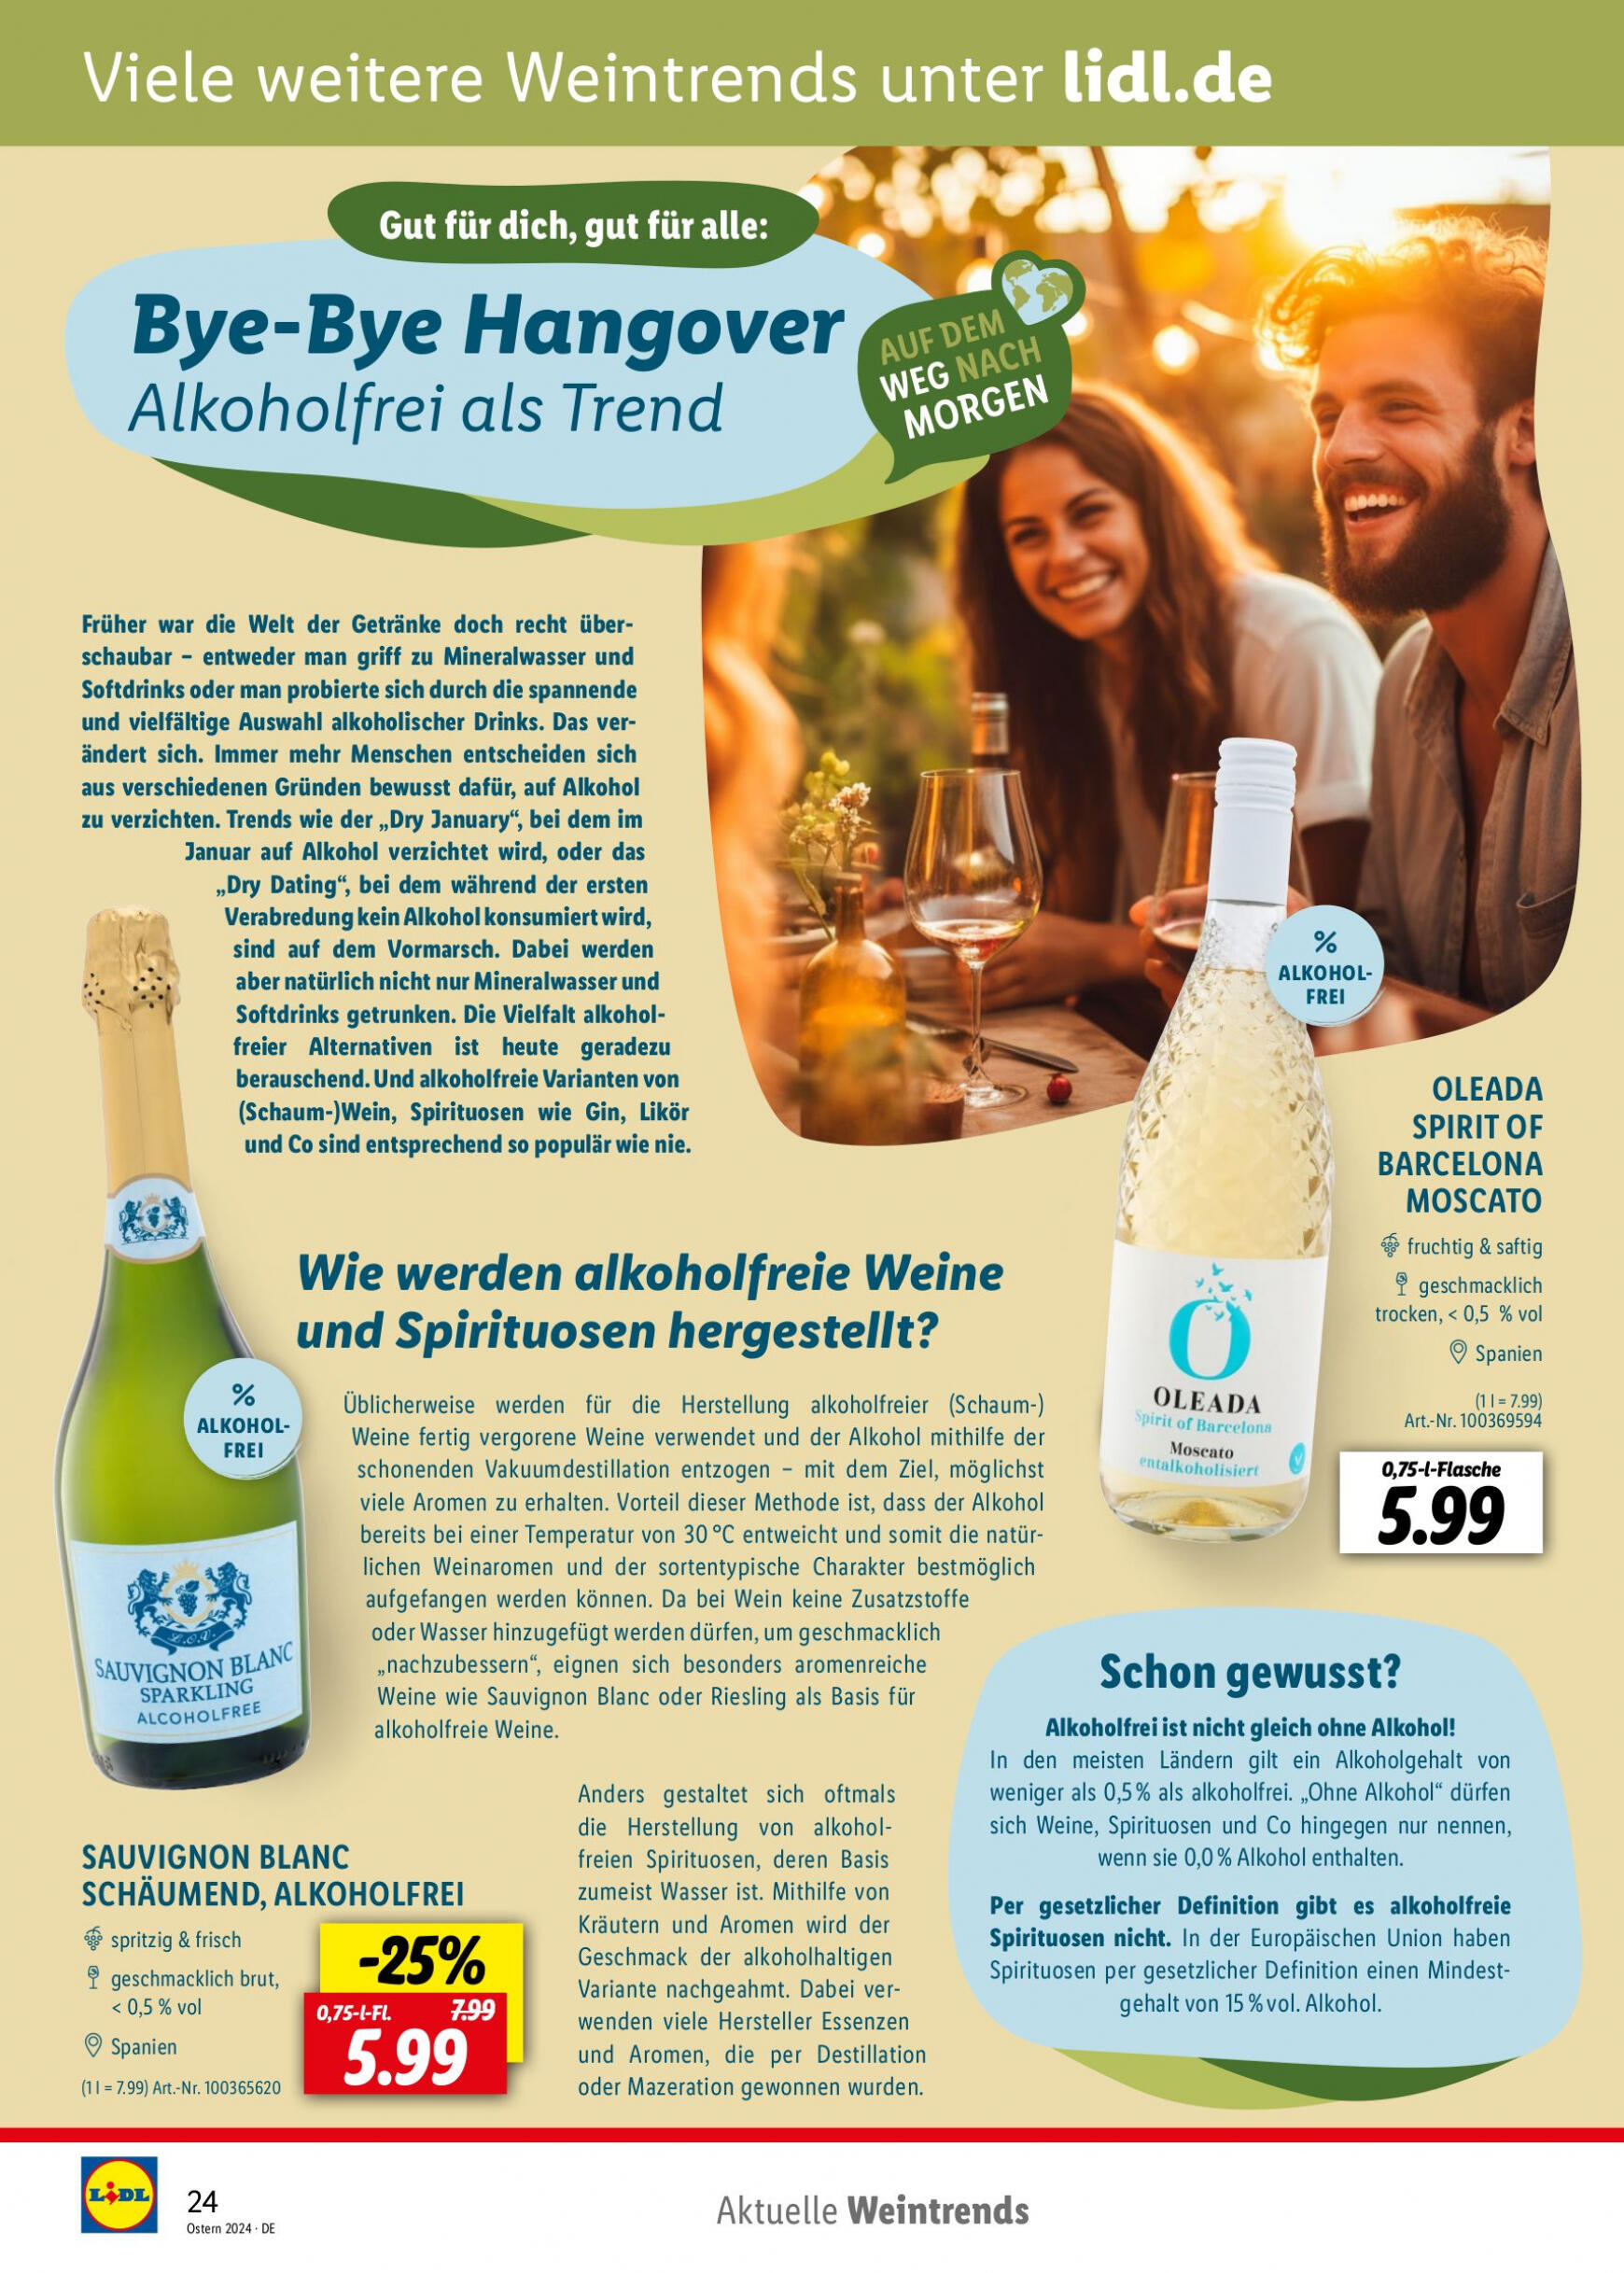 lidl - Flyer Lidl - Wein Entkorkt aktuell 04.03. - 30.04. - page: 24